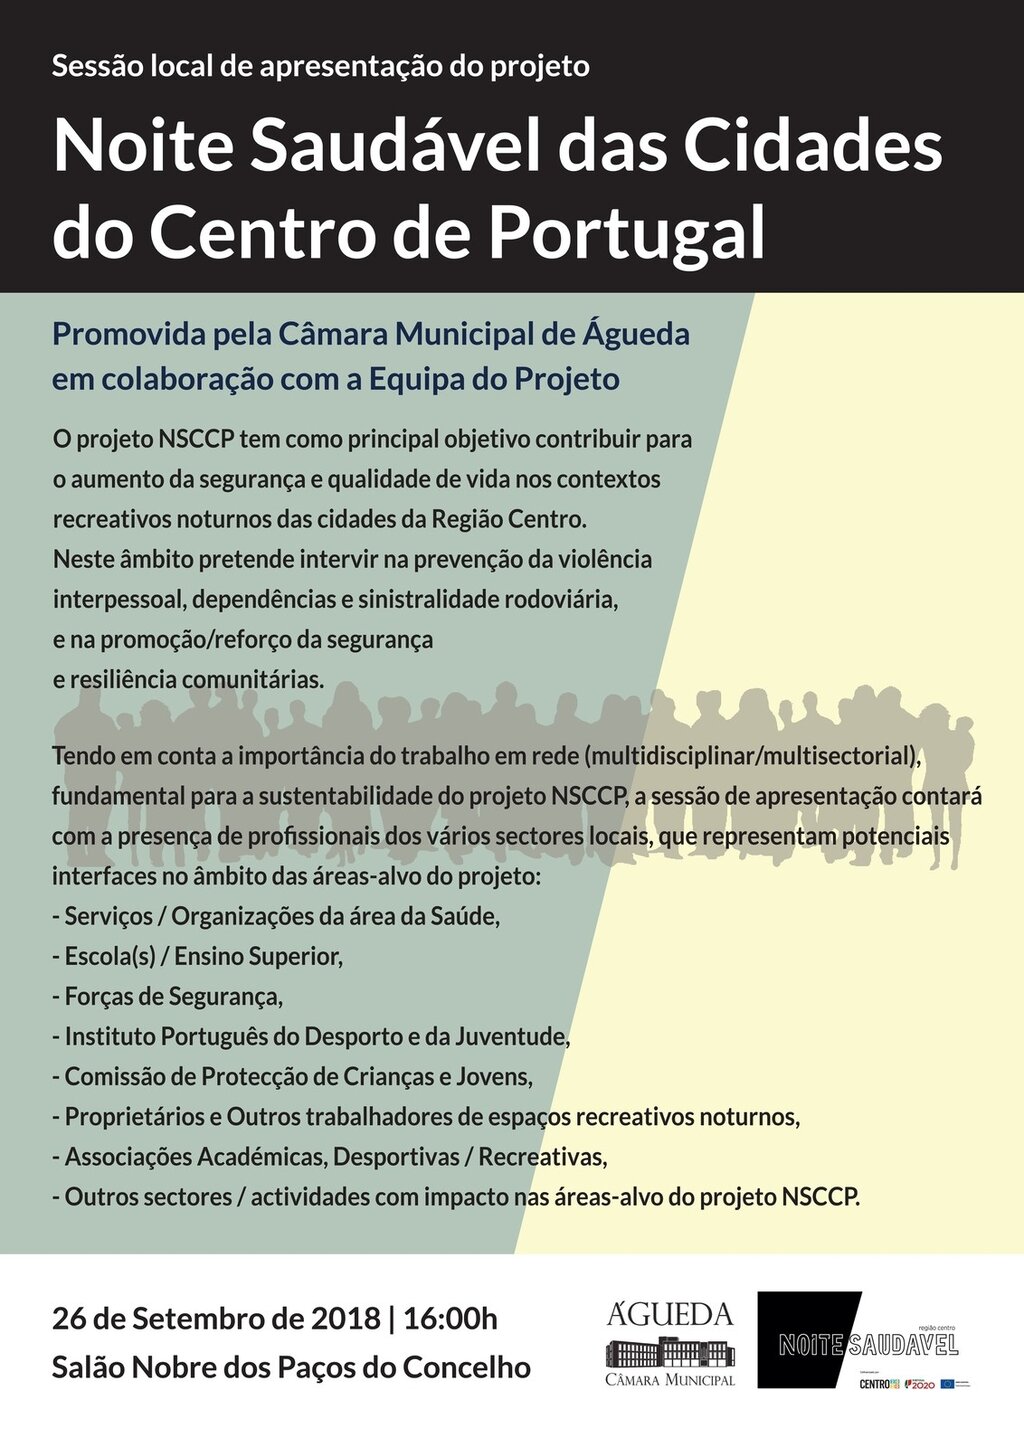 Noite Saudável das Cidades do Centro de Portugal